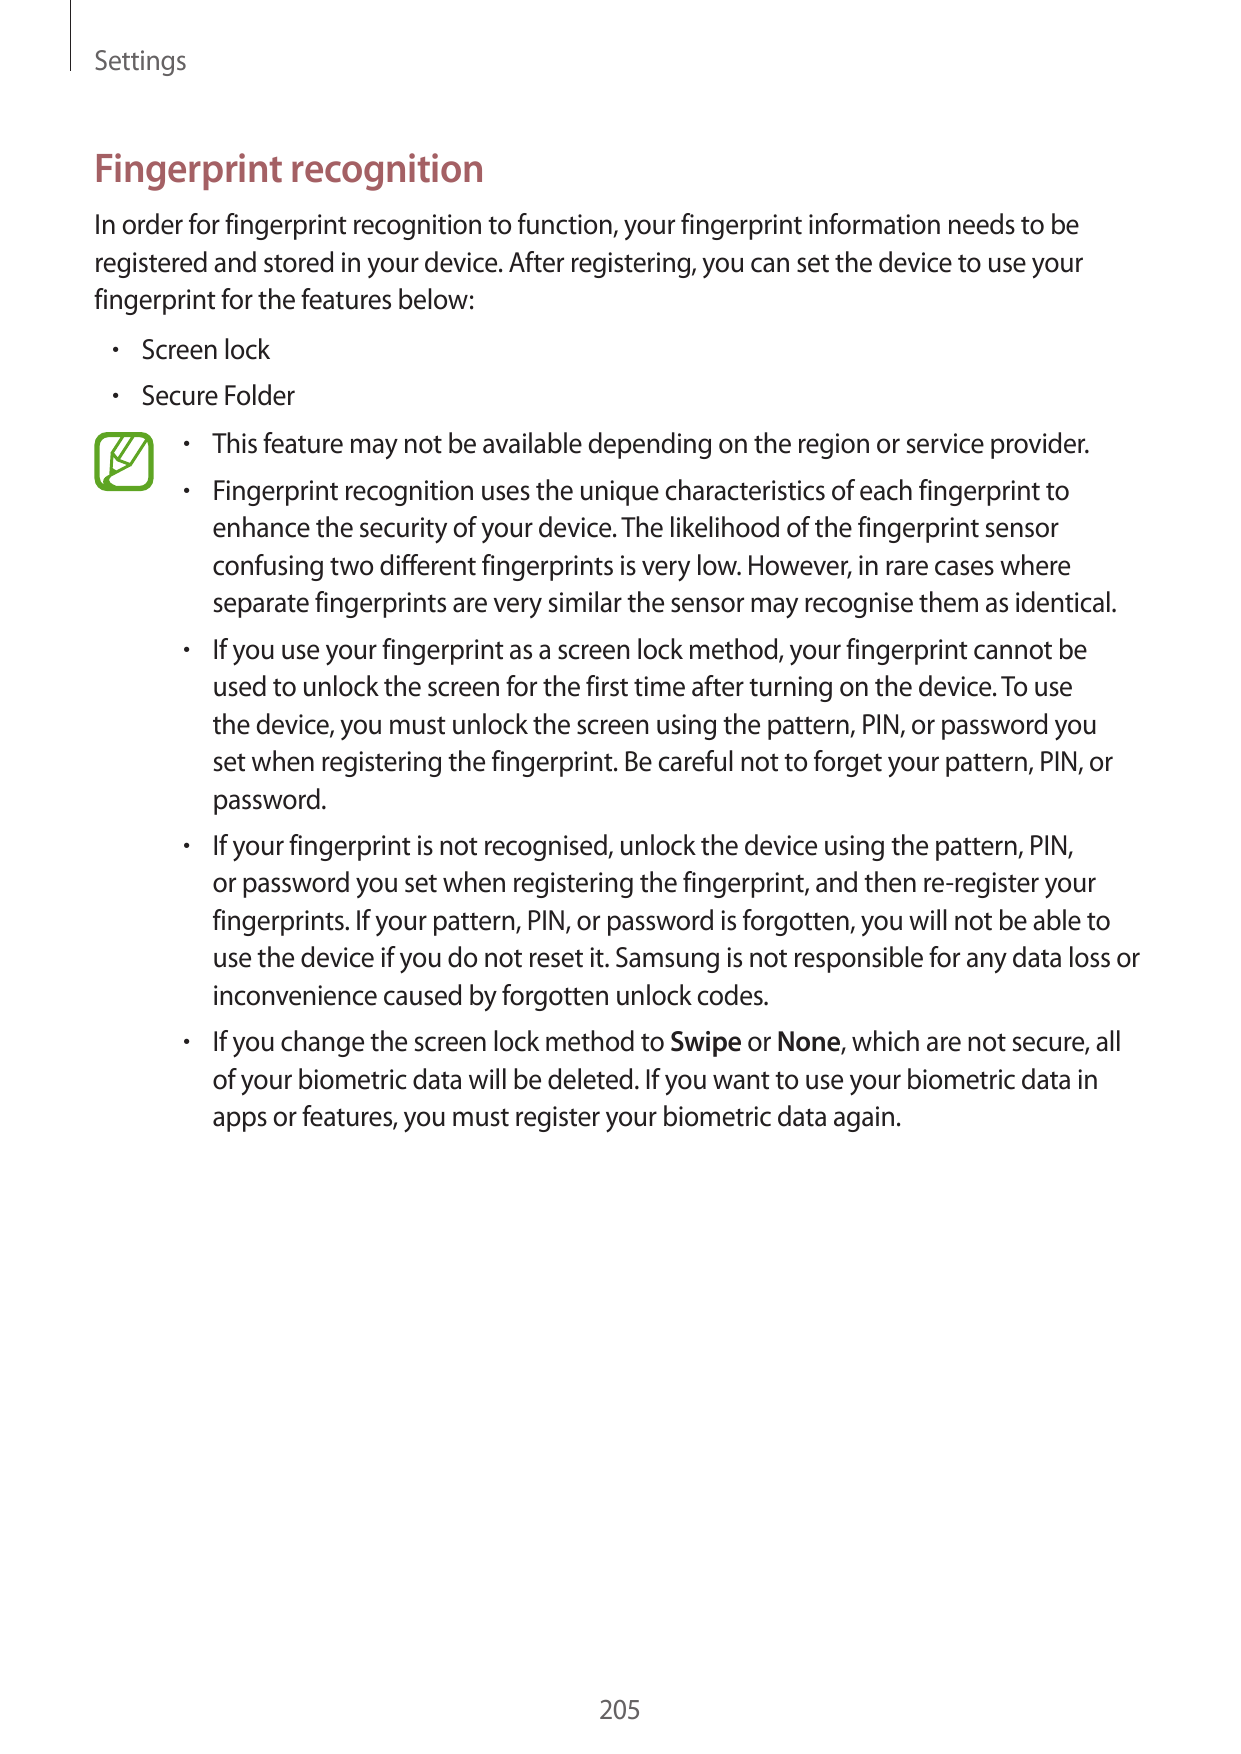 SettingsFingerprint recognitionIn order for fingerprint recognition to function, your fingerprint information needs to beregiste